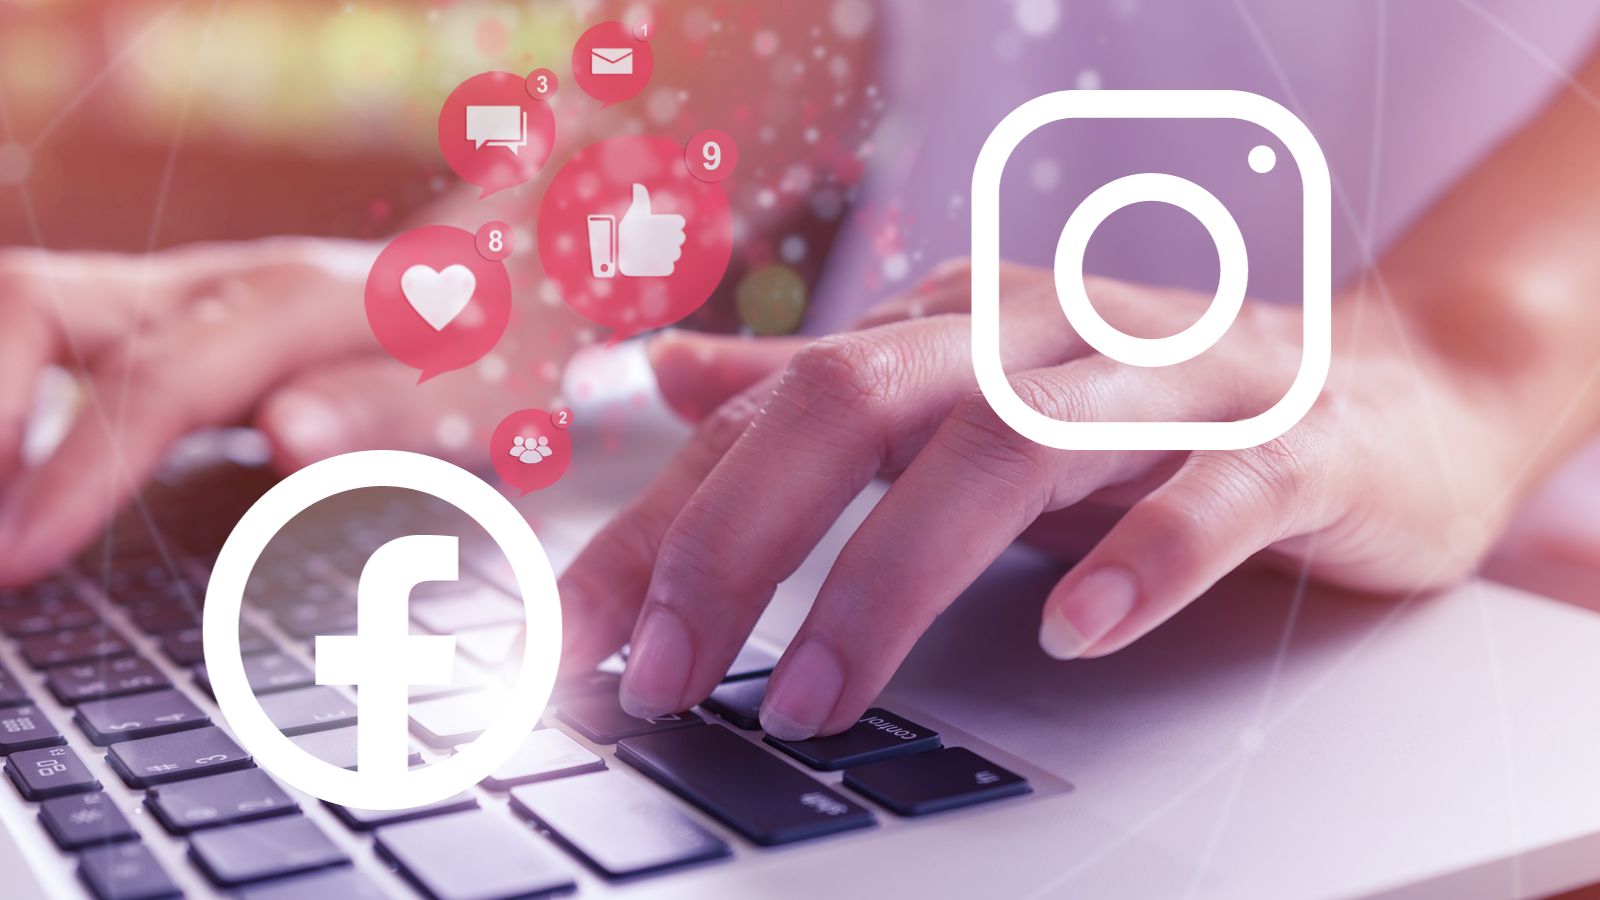 Facebook e Instagram a PAGAMENTO: la notizia è UFFICIALE